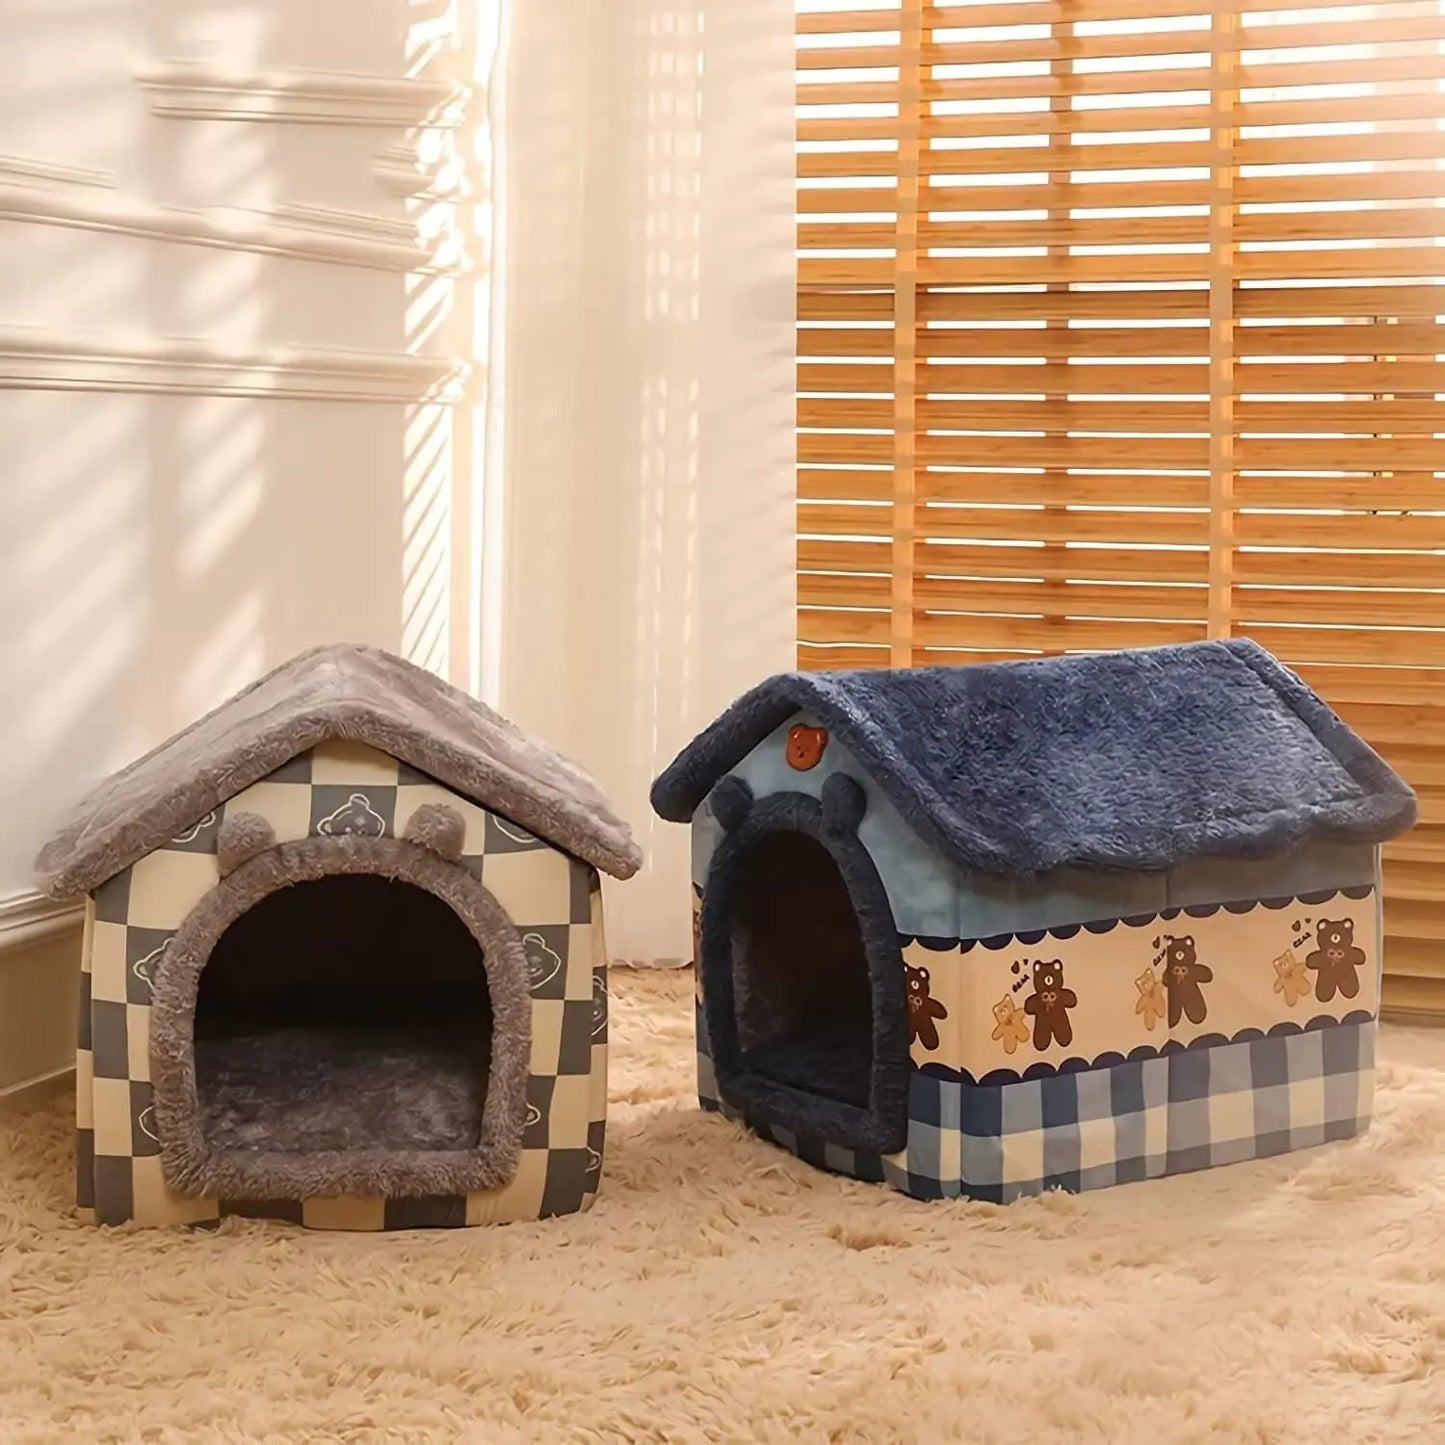 Foldable House-Shaped Pet Home